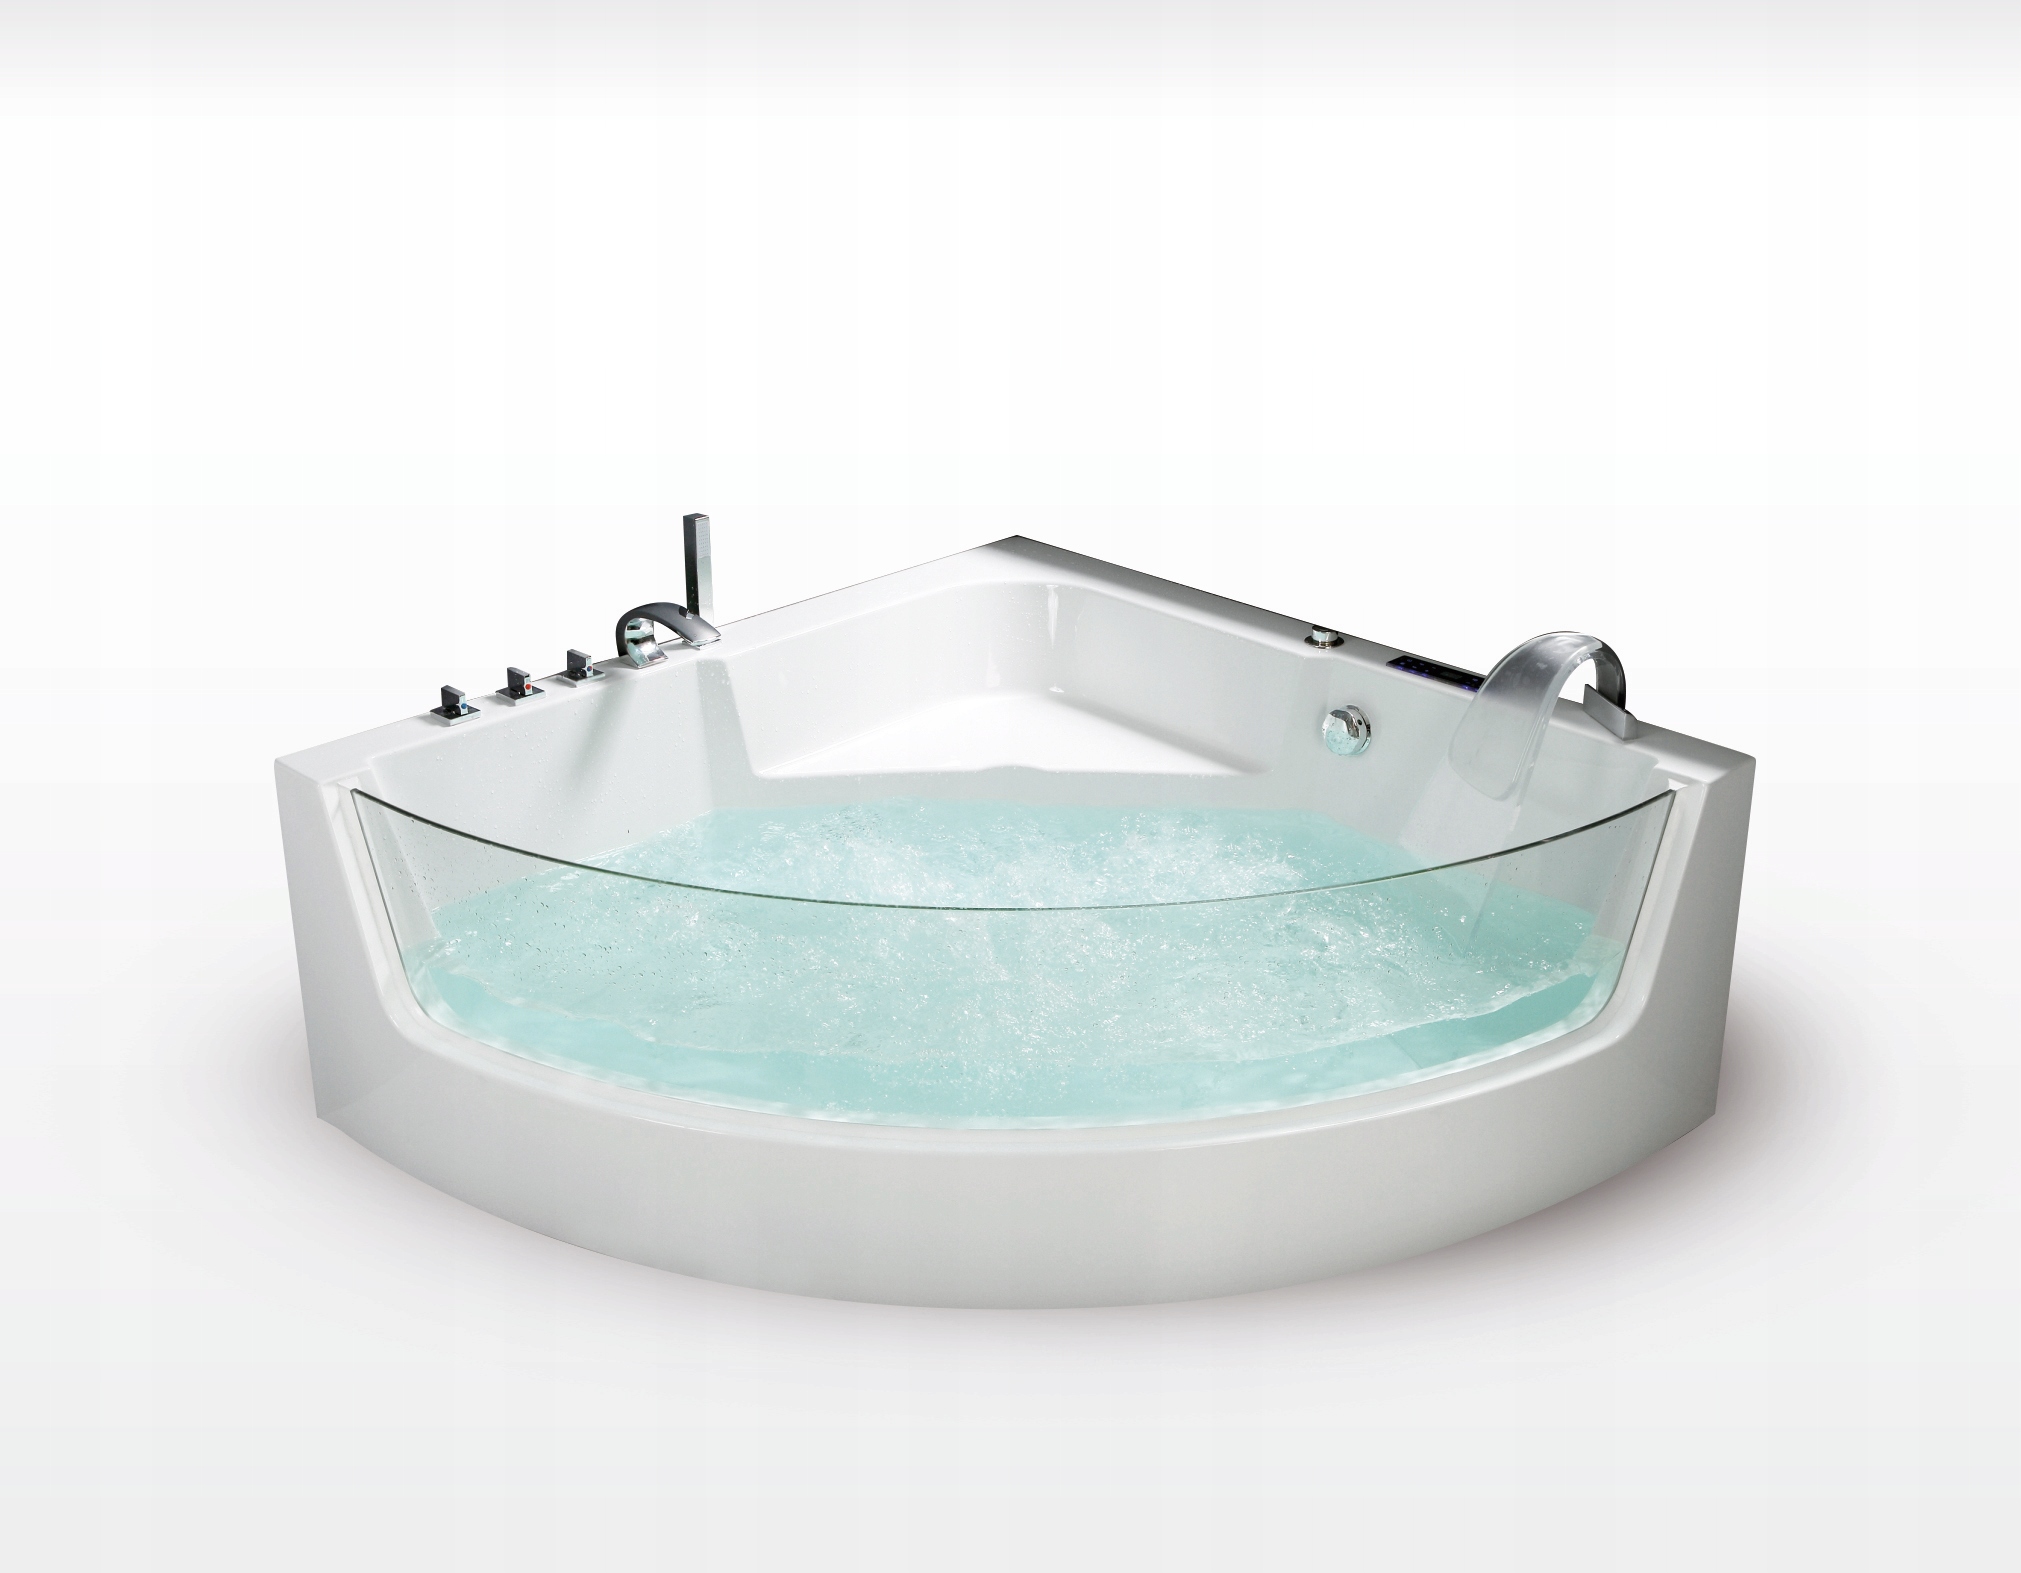 Угловые ванны мини: продукция размером 100х70 и 115 на 72 см, небольшие варианты для комнаты, отзывы о мини-конструкциях